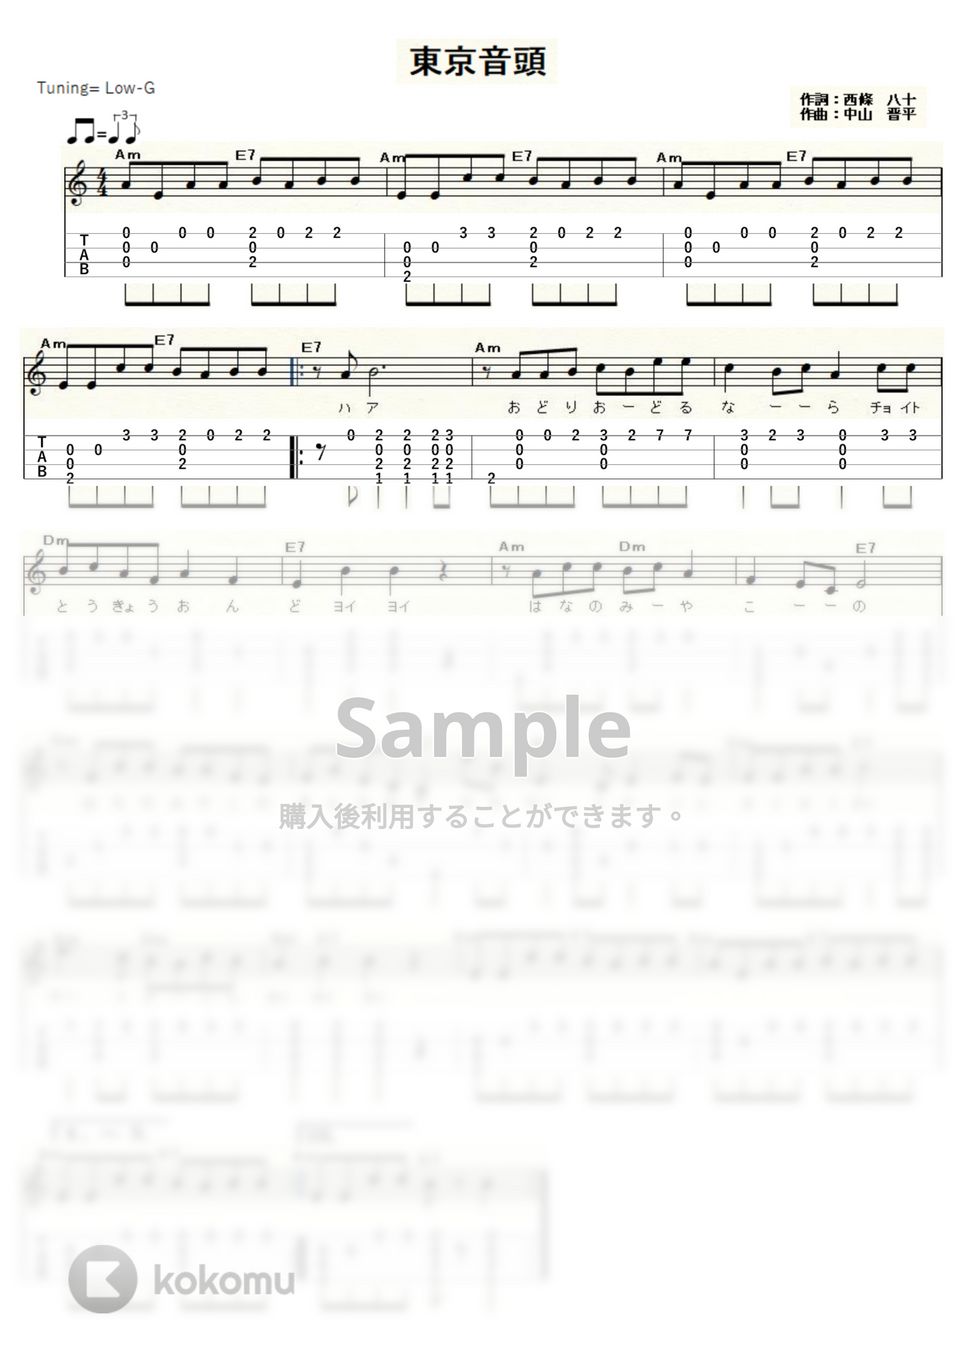 東京音頭 (ｳｸﾚﾚｿﾛ/Low-G/初級～中級) by ukulelepapa